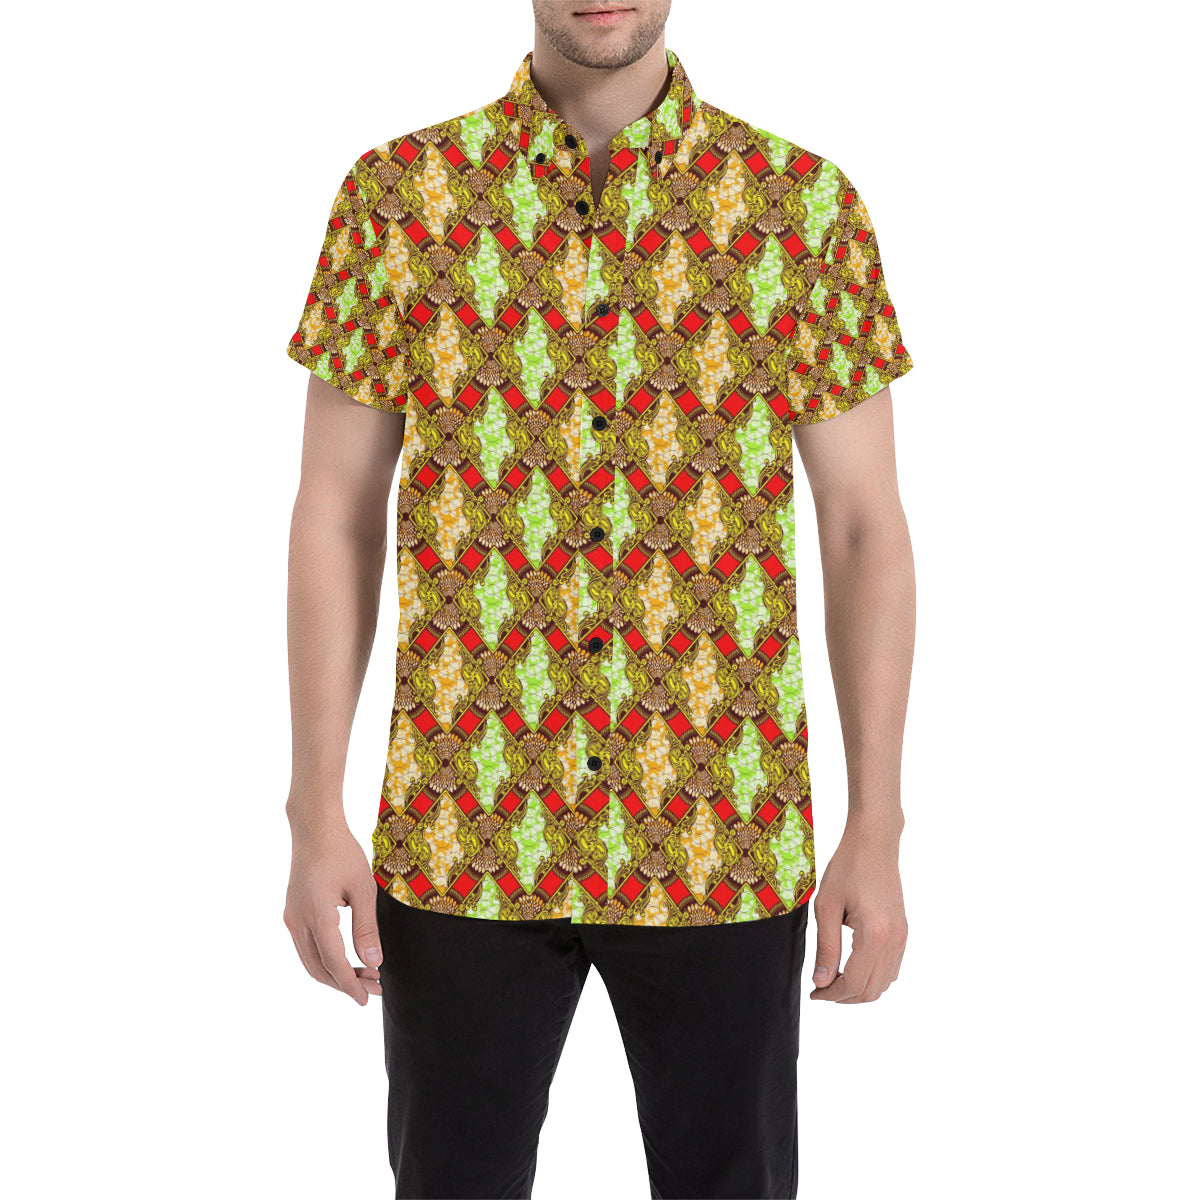 African Classic Print Pattern Men's Short Sleeve Button Up Shirt